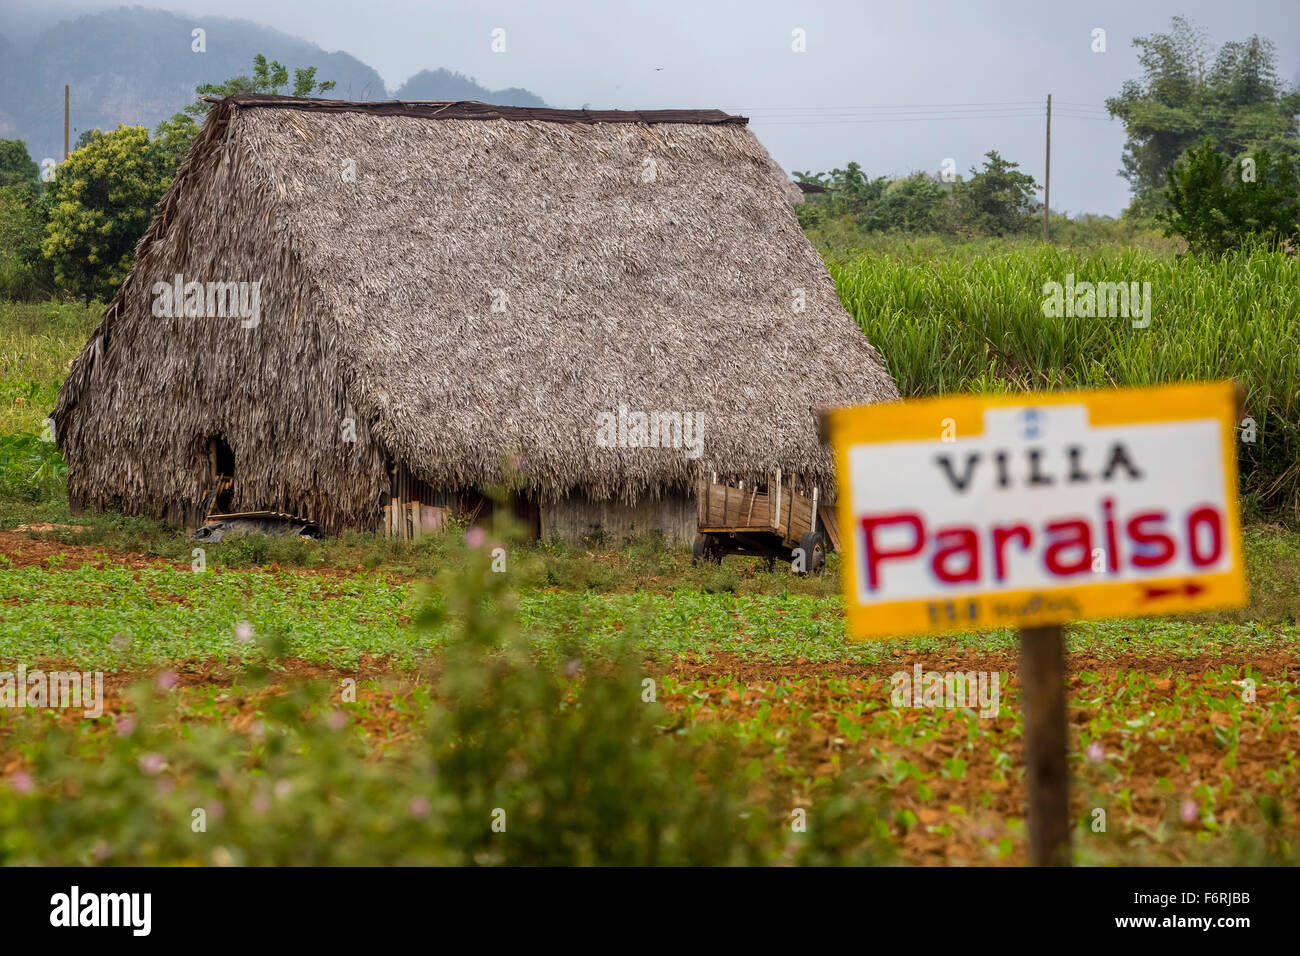 Inscrivez-vous à un régime privé, la Villa Paraiso, couvert de feuilles barn pour sécher les feuilles de tabac, Viñales, Cuba Banque D'Images